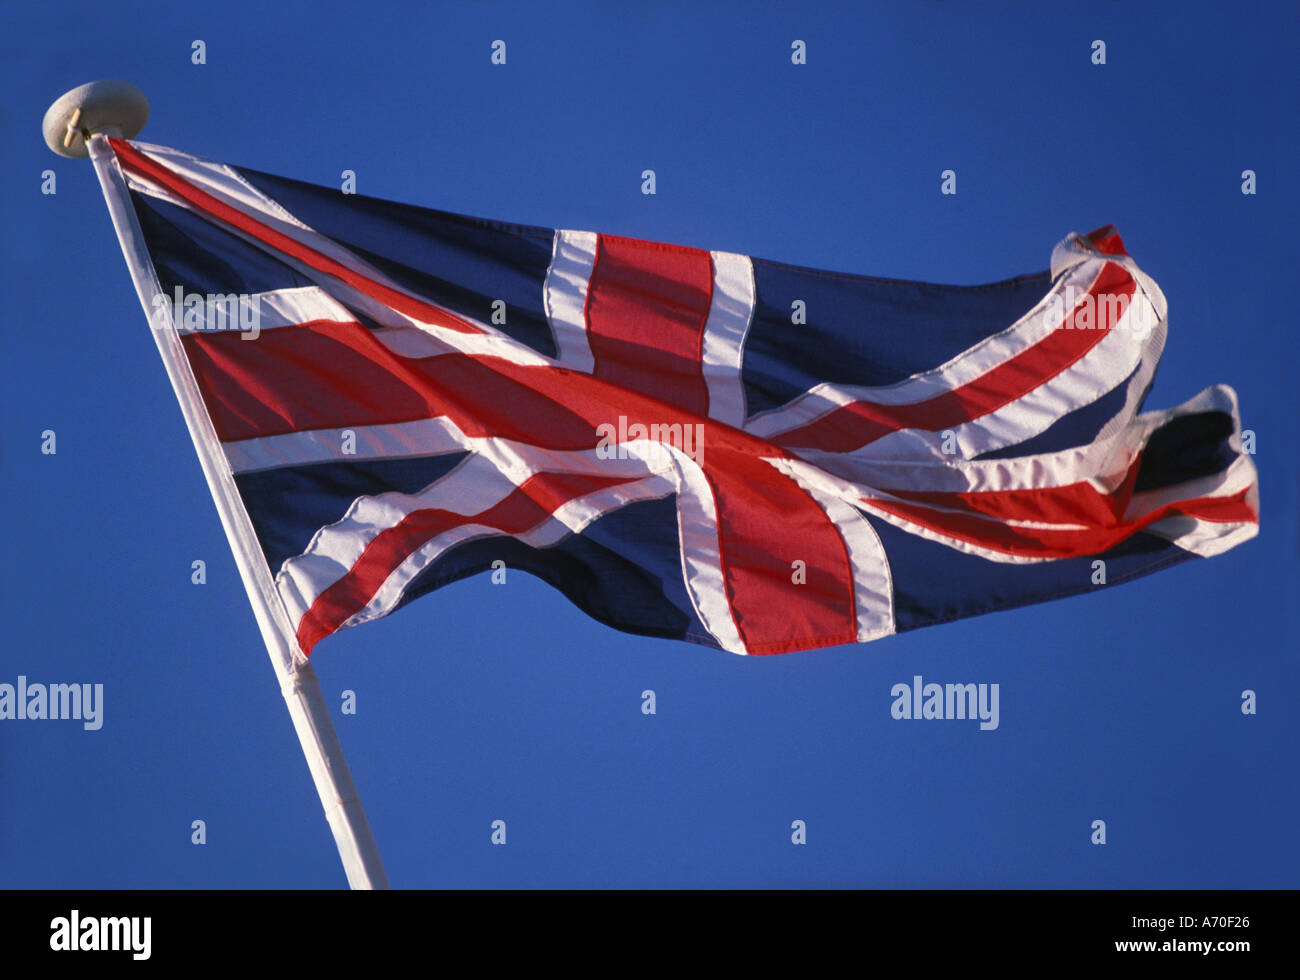 Union Jack United Kingdom flag Stock Photo